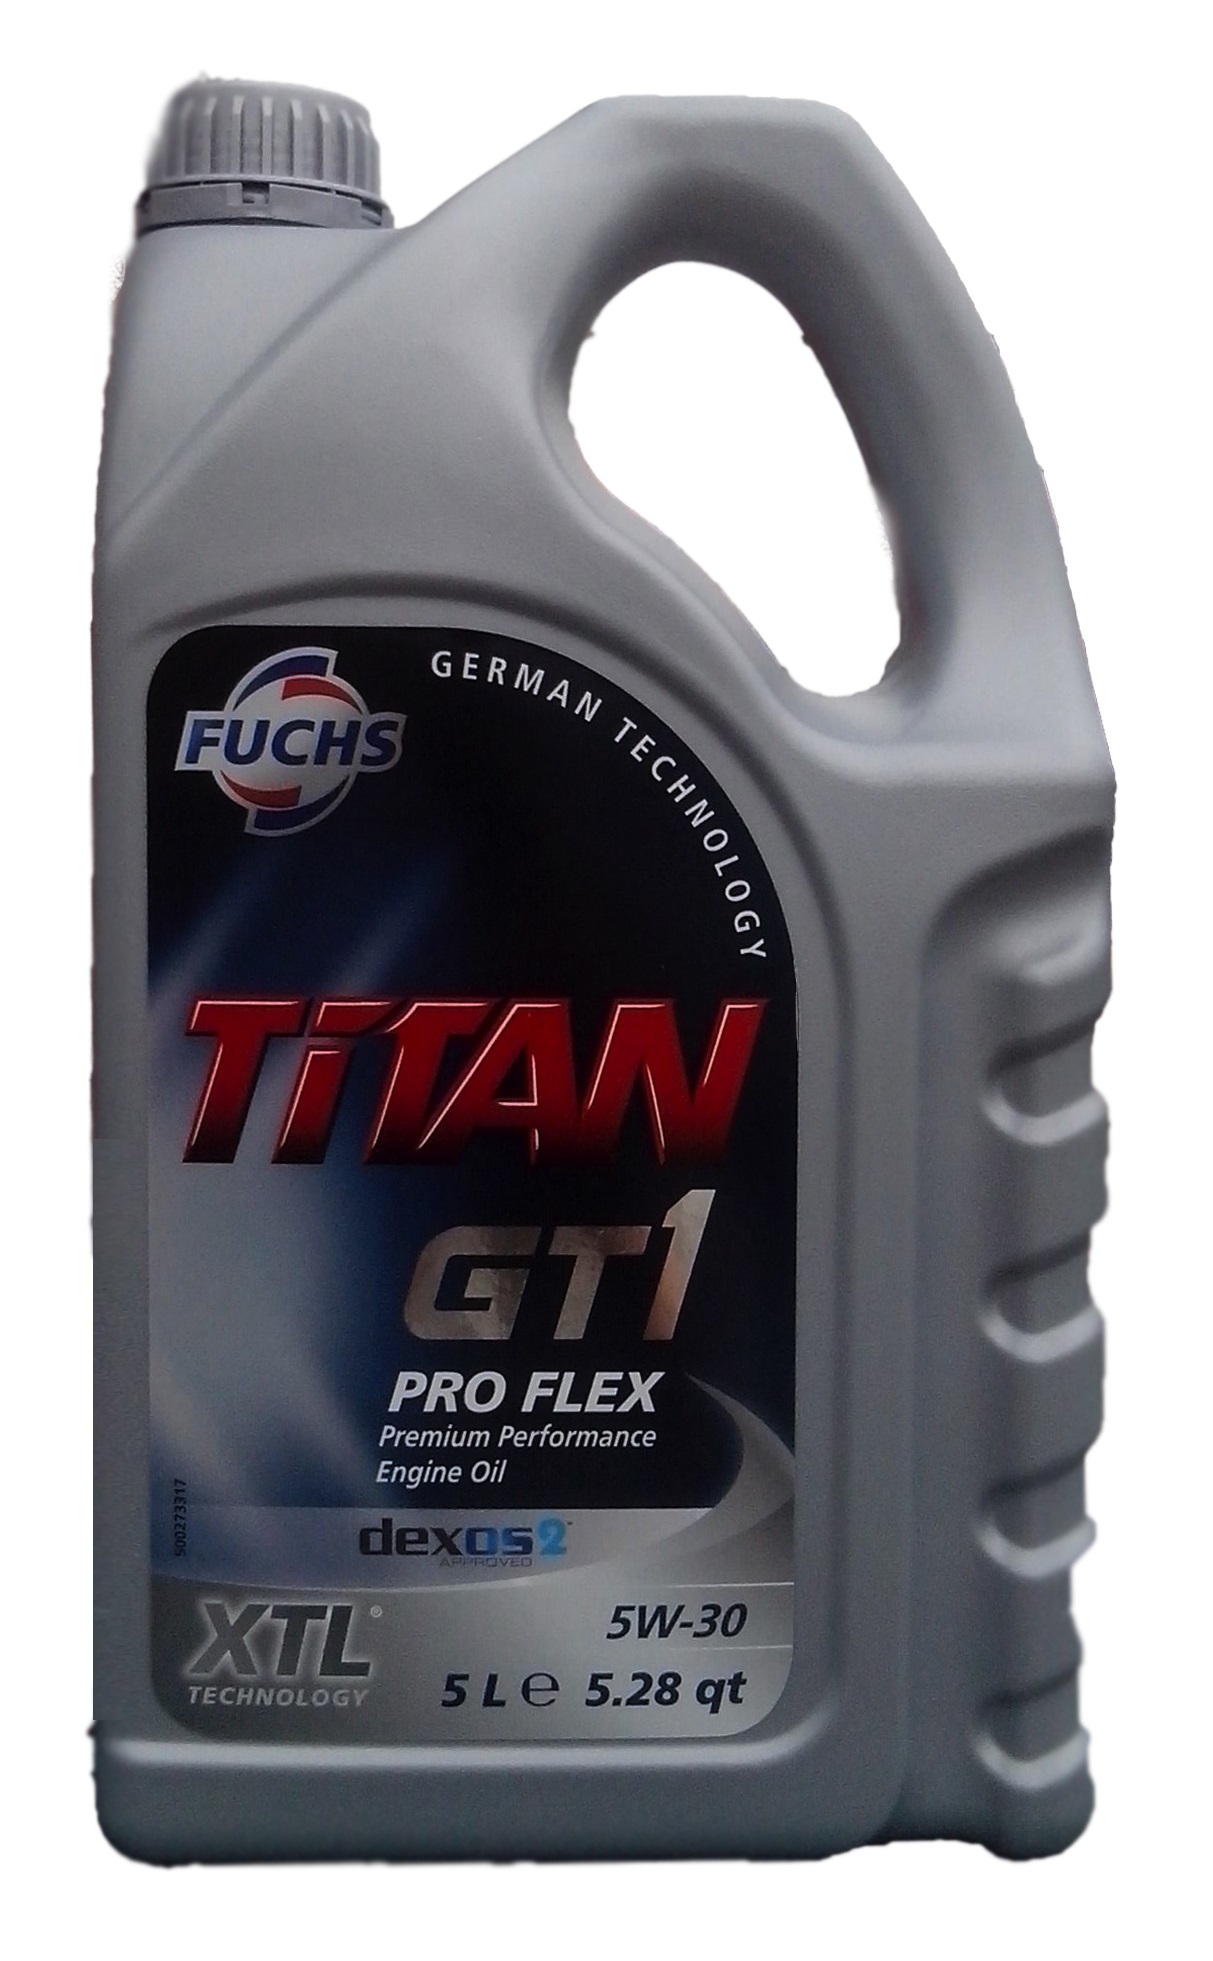 Fuchs 600756611 Engine oil Fuchs Titan Gt1 Pro Flex 5W-30, 5L 600756611